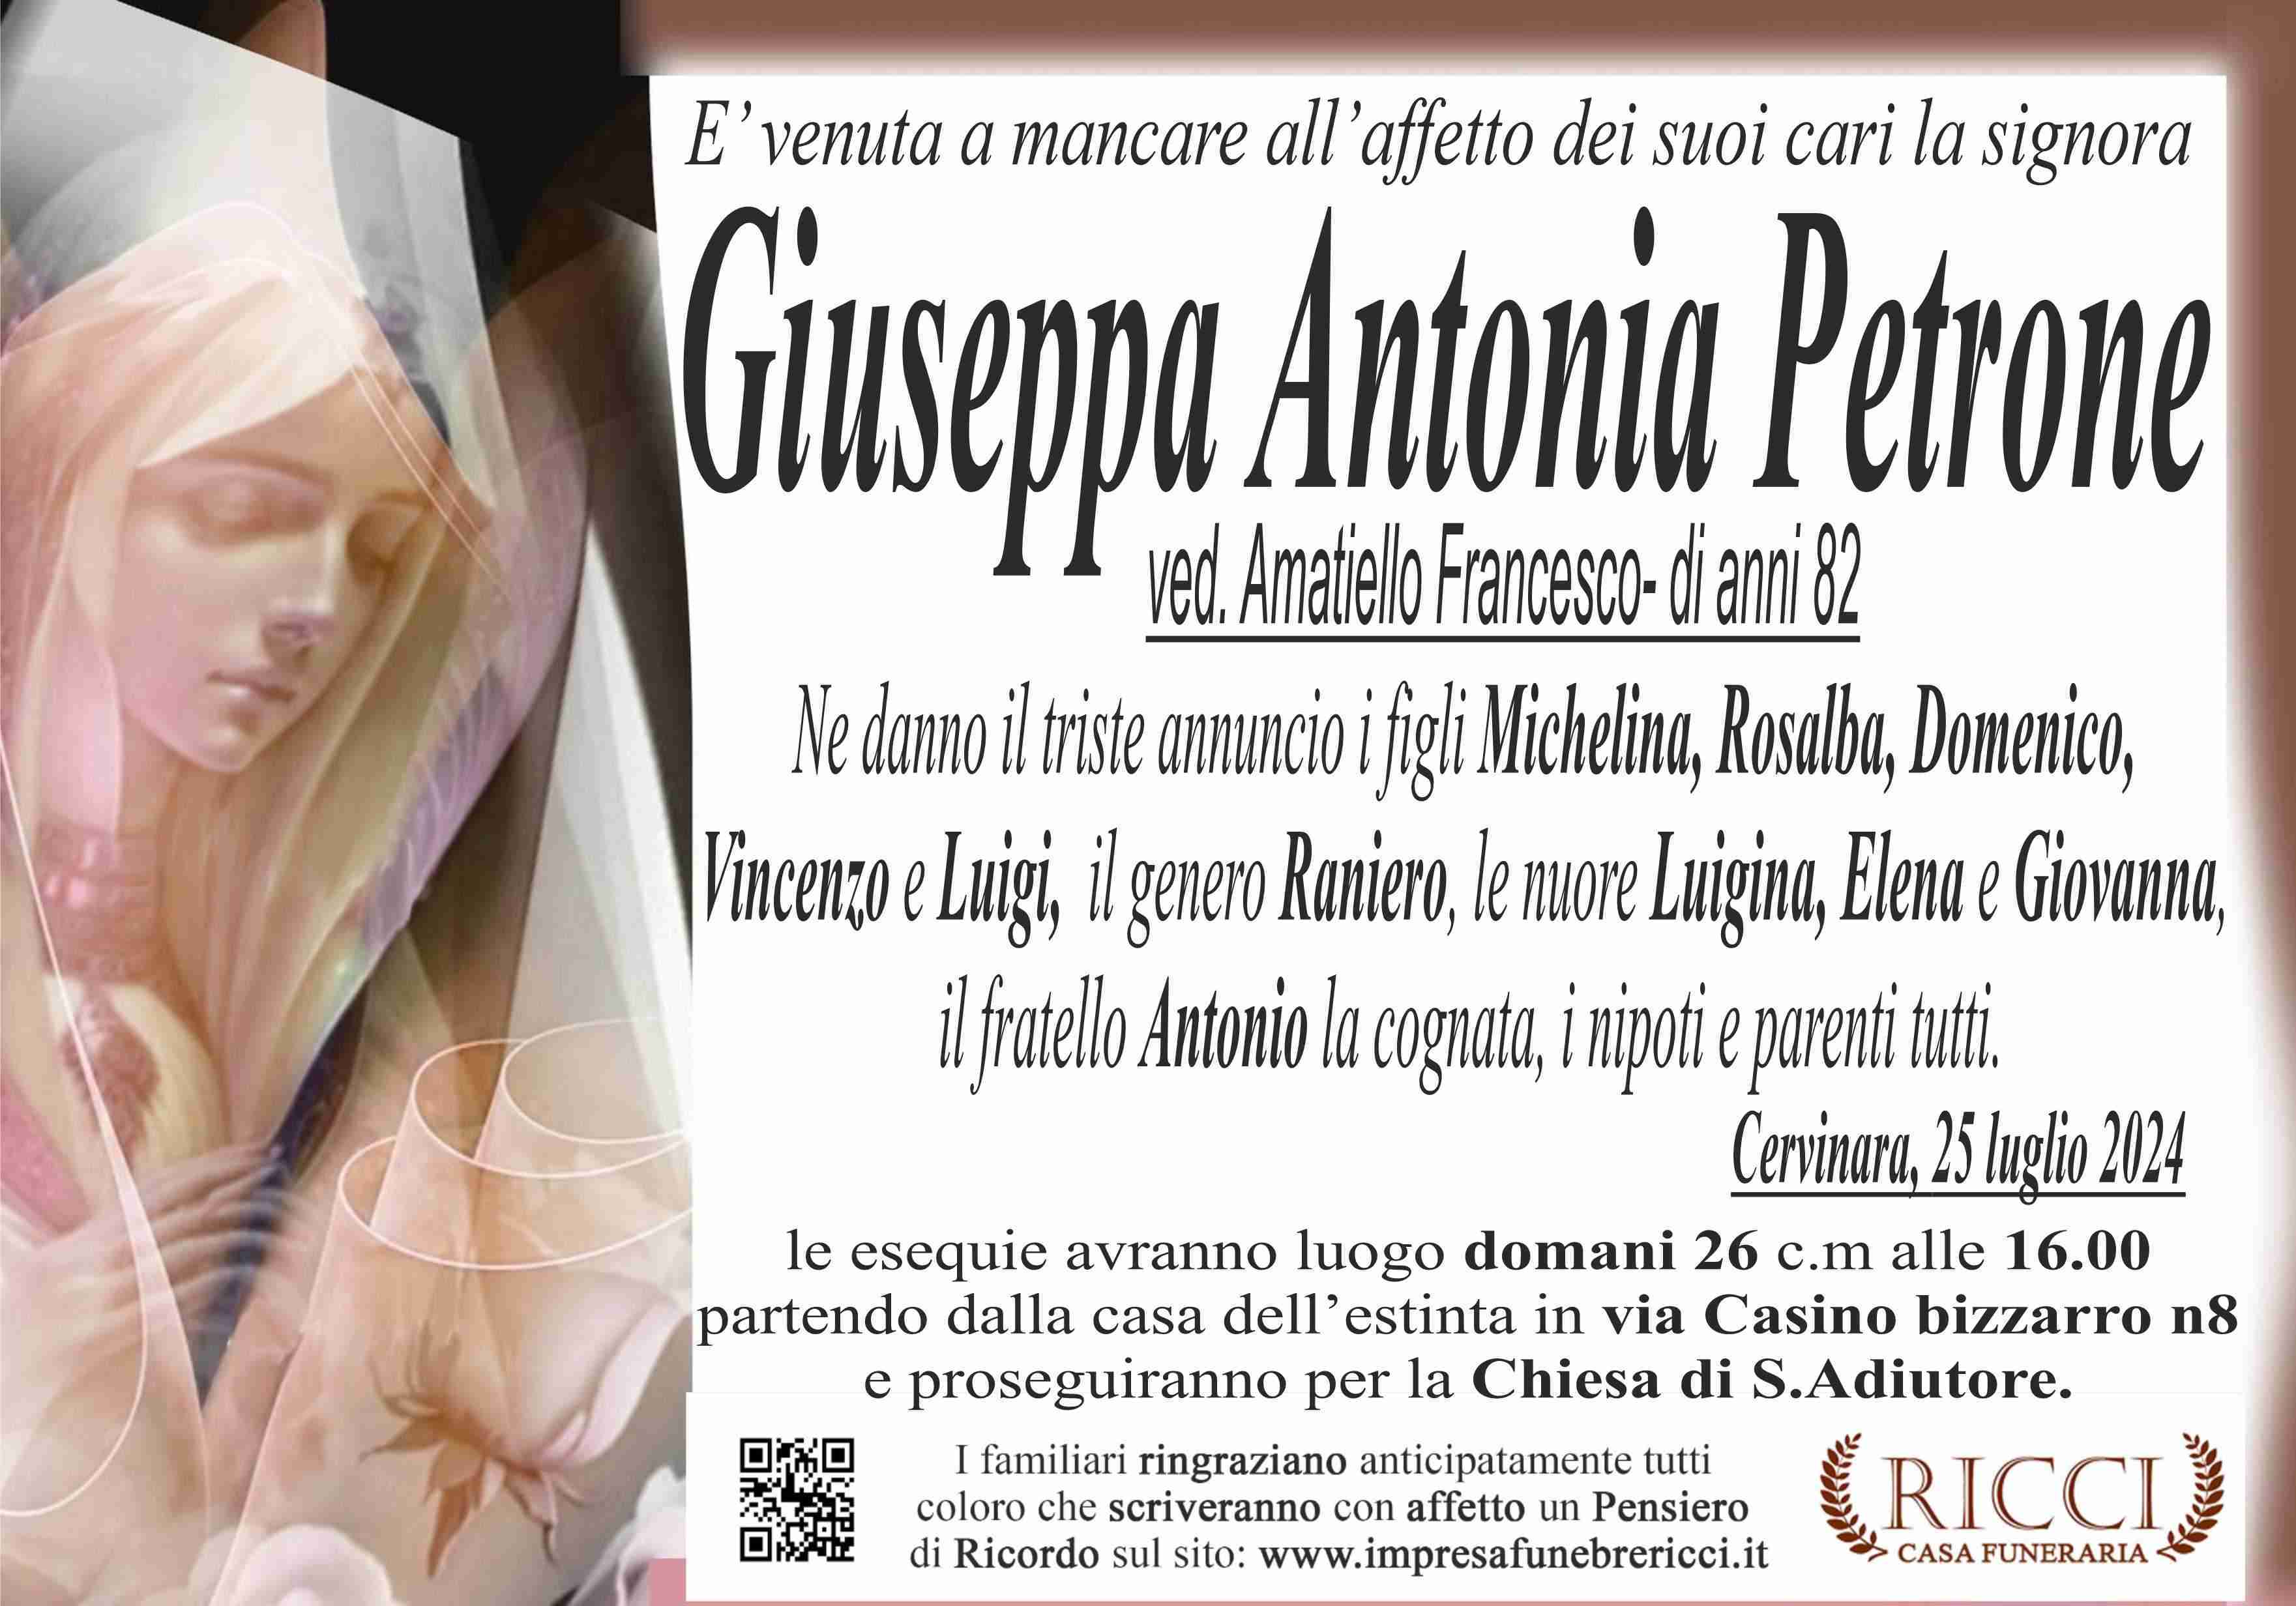 Giuseppa Antonia Petrone